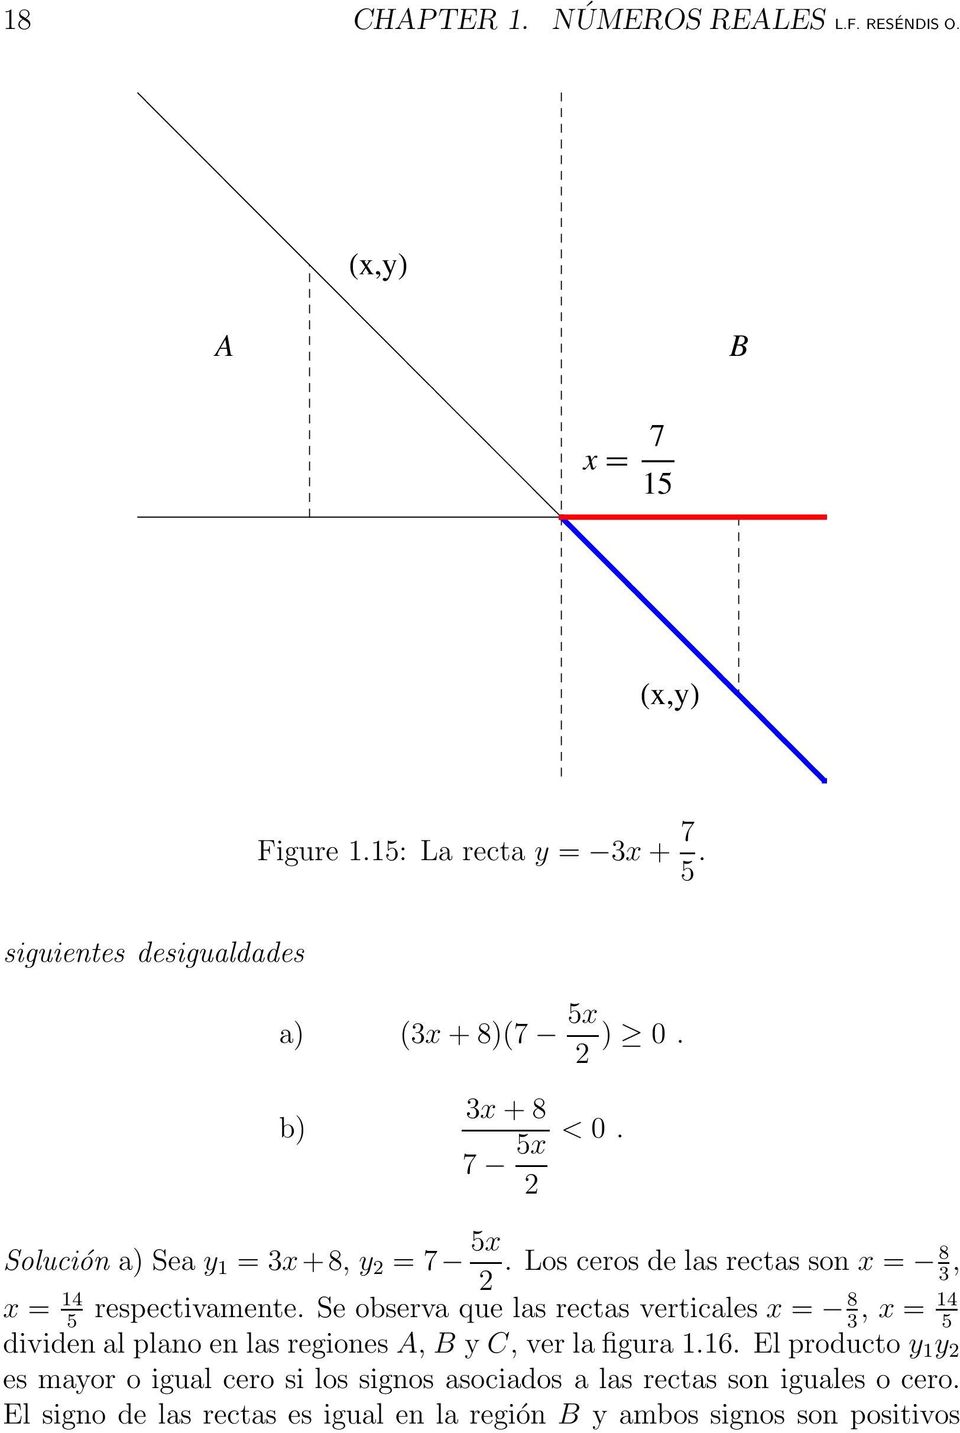 Los ceros de las rectas son x = 8 3, x = 14 respectivamente.